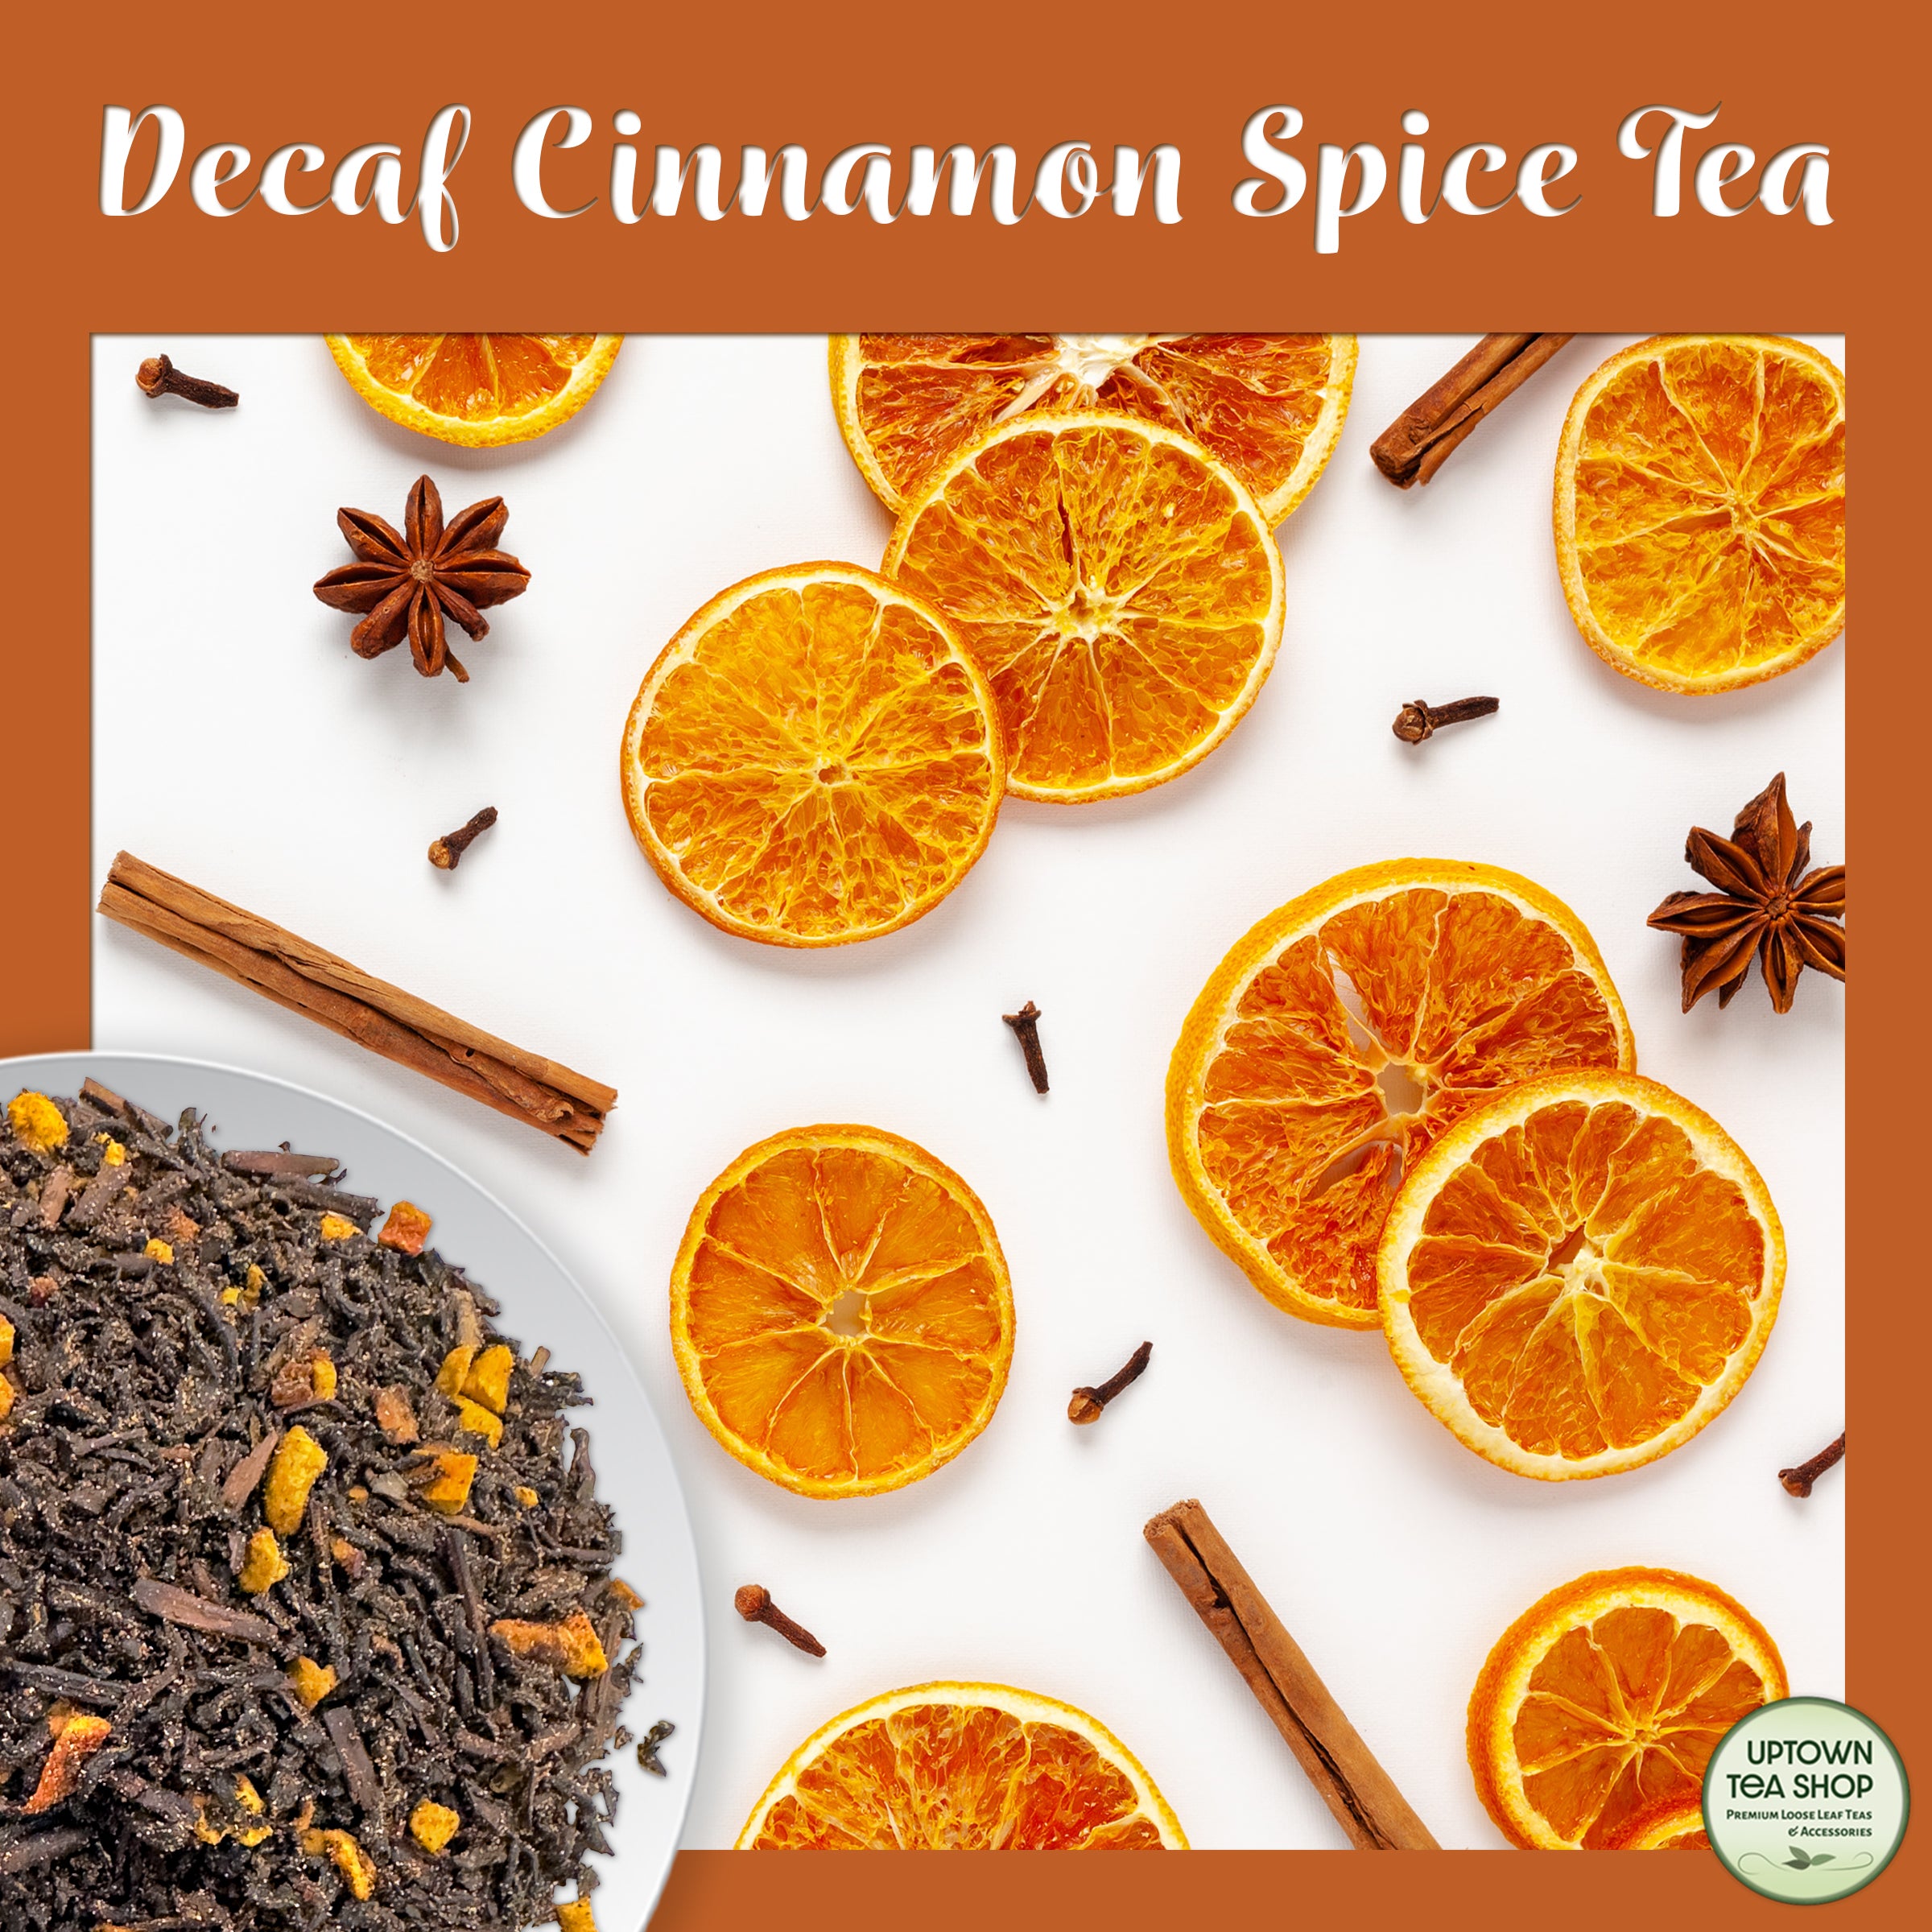 Decaf Cinnamon Spice Tea